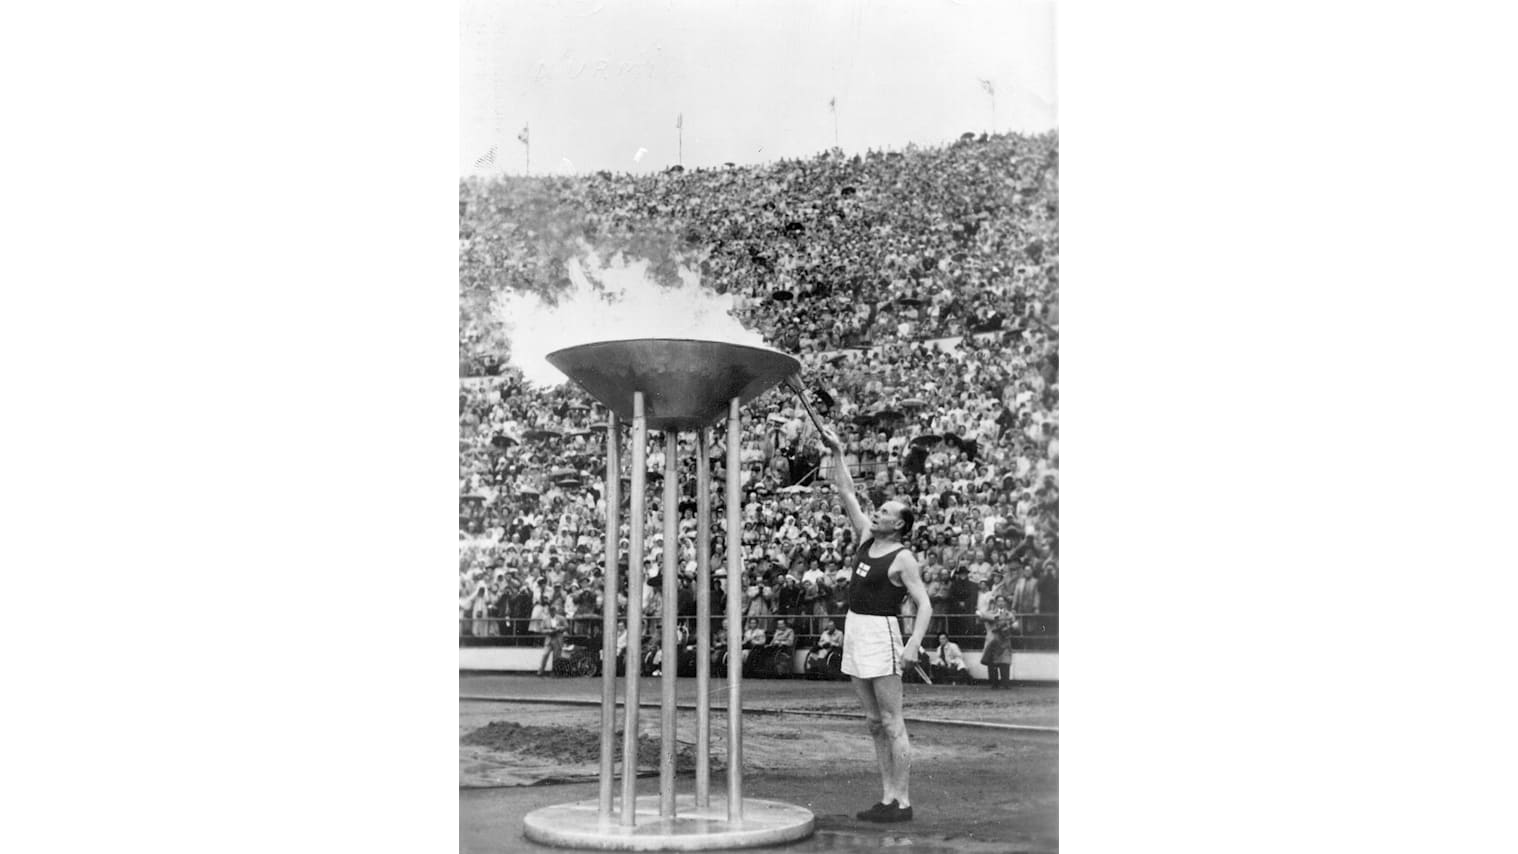 Helsínquia 1952: Jogos Olímpicos de Verão em plena Guerra Fria